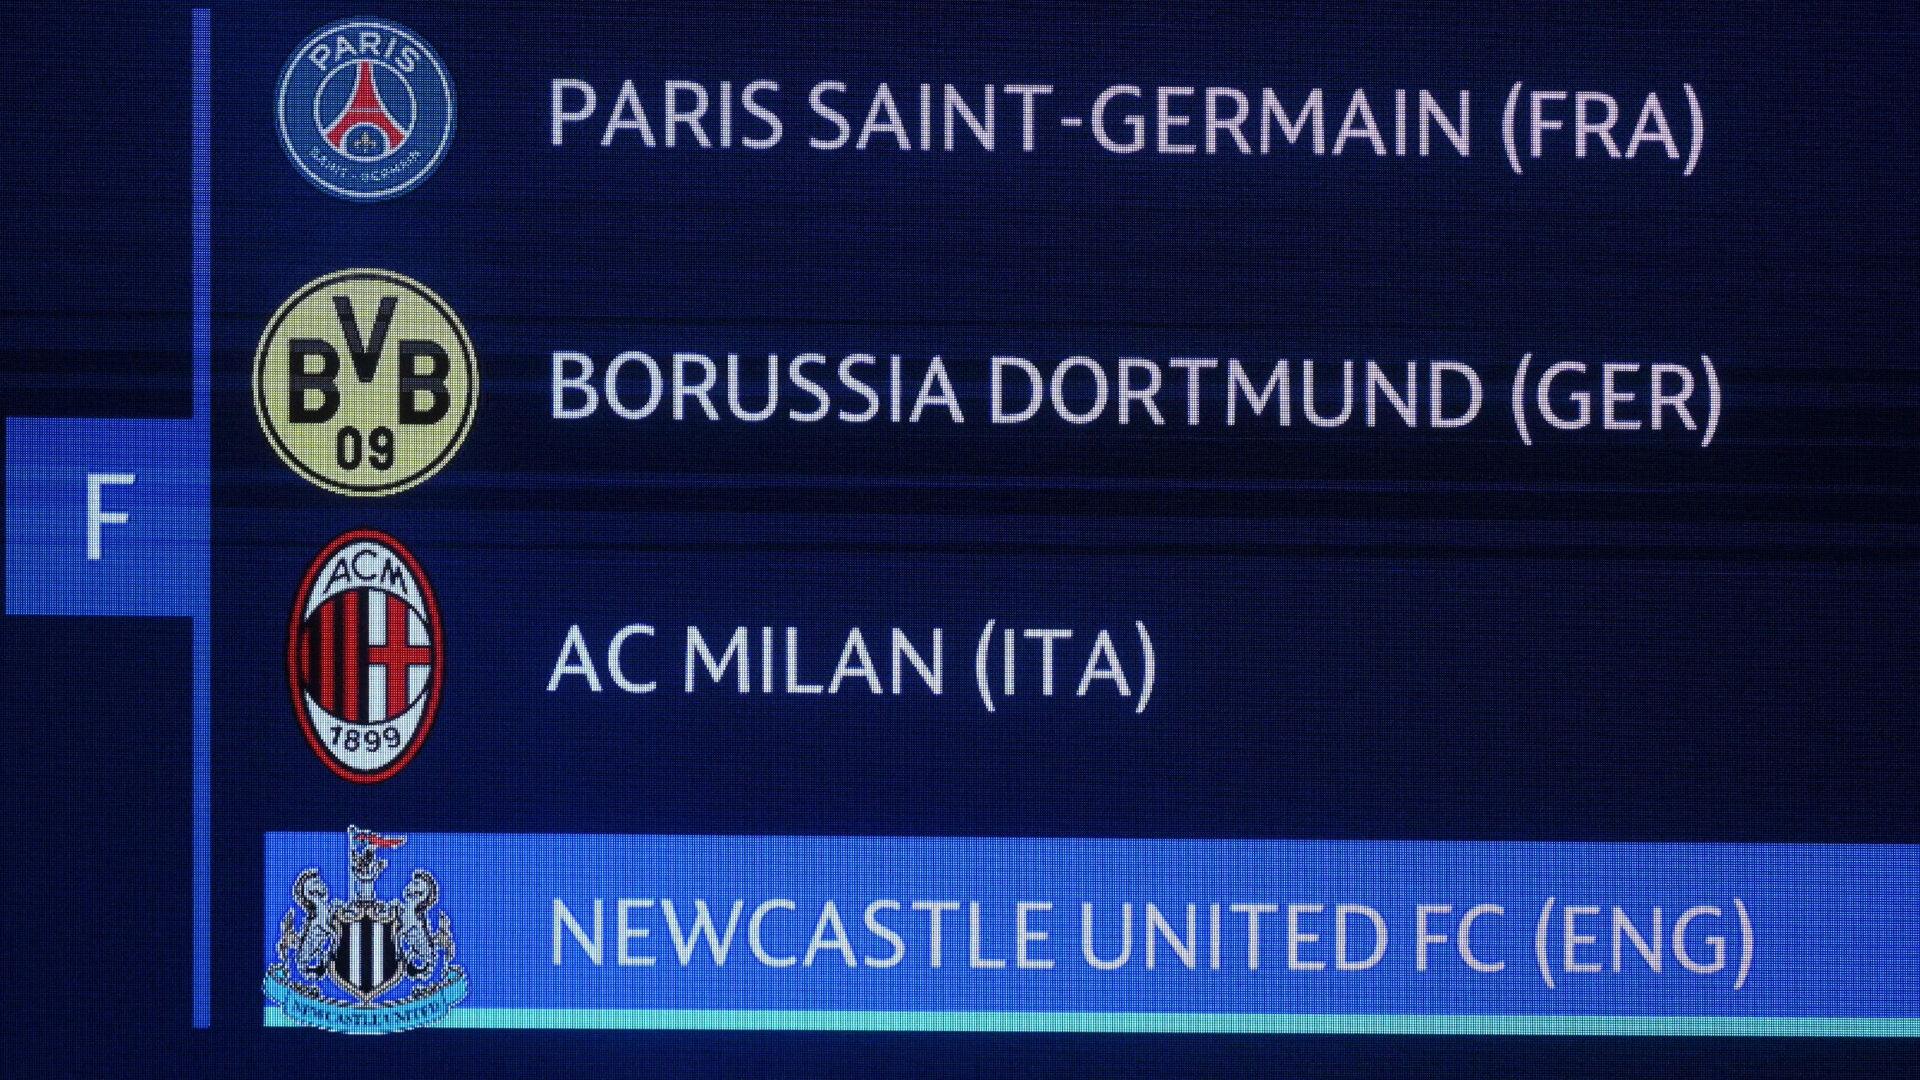 Champions League Expert Analyzes Challenge PSG Faces vs. Newcastle